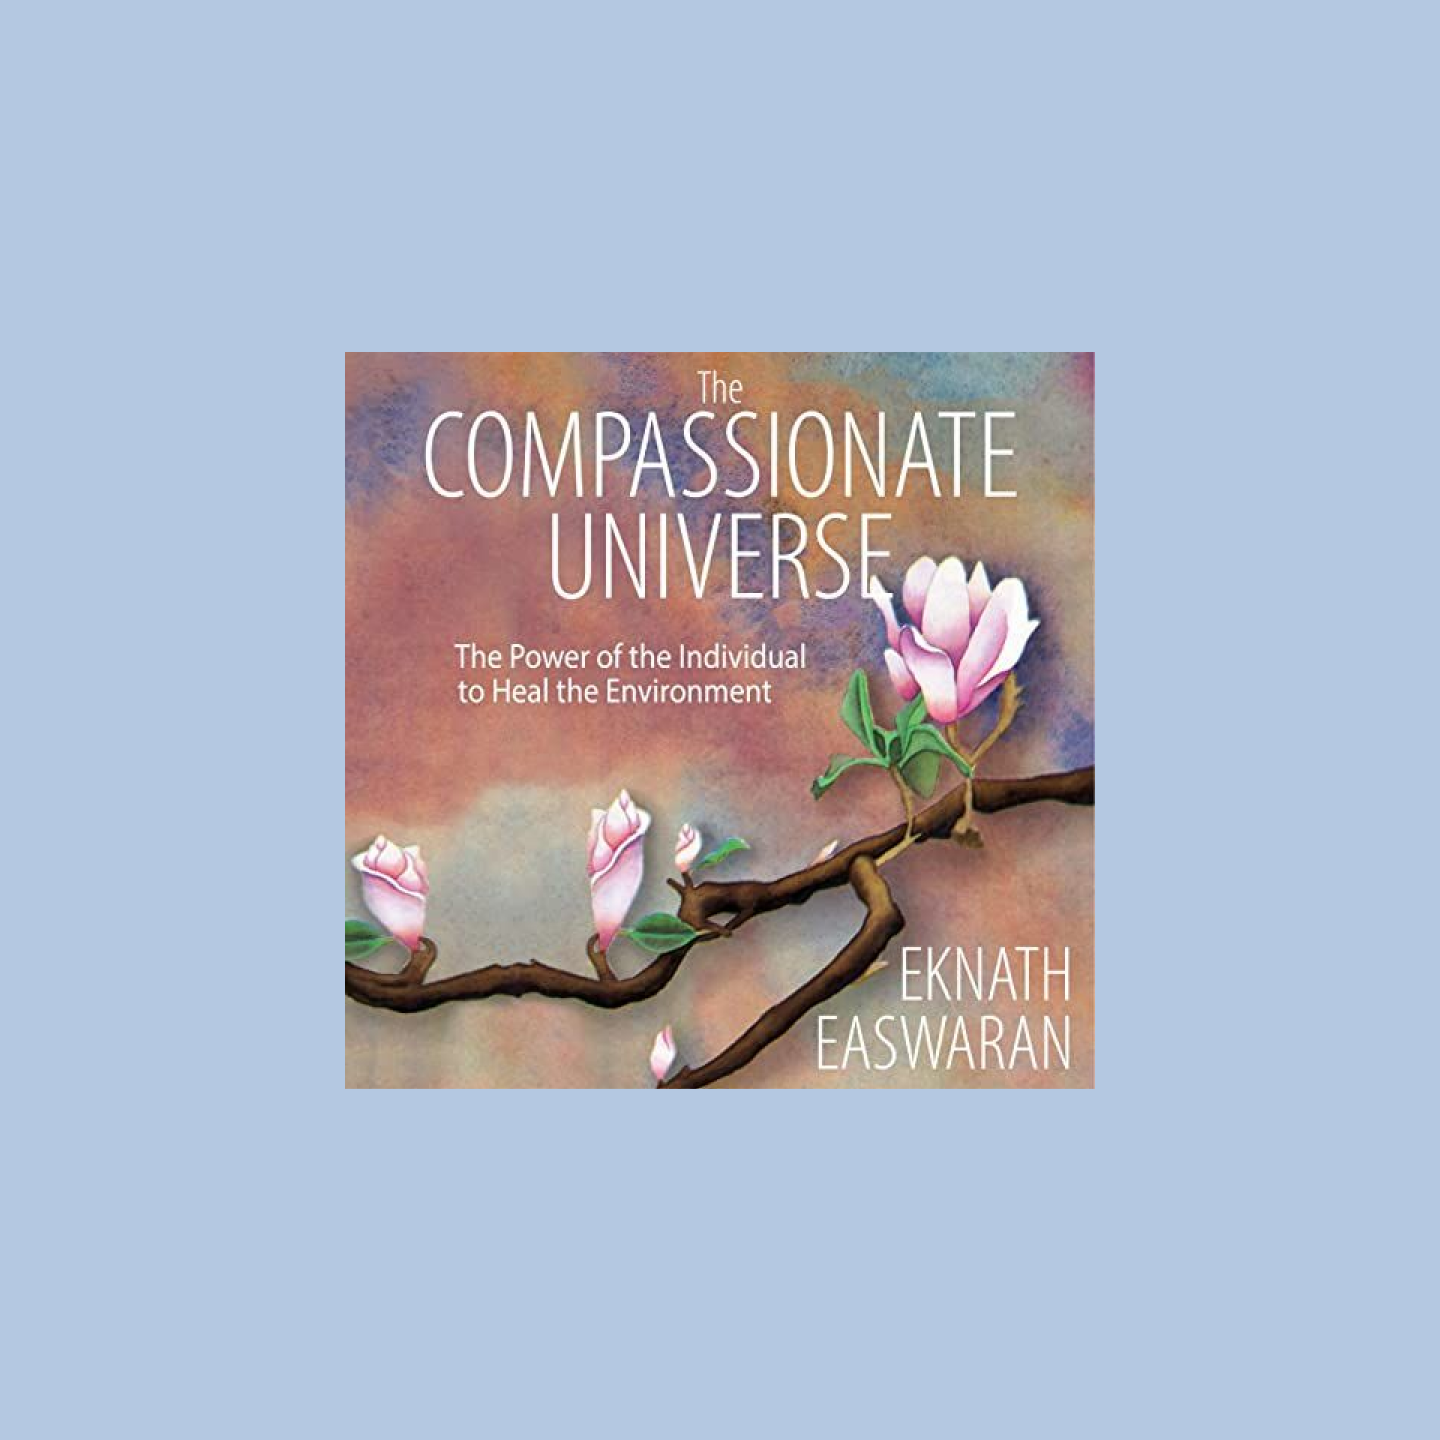 Copertina dell'audiolibro con la scritta The Compassionate Universe e il disegno di un albero di ciliegio